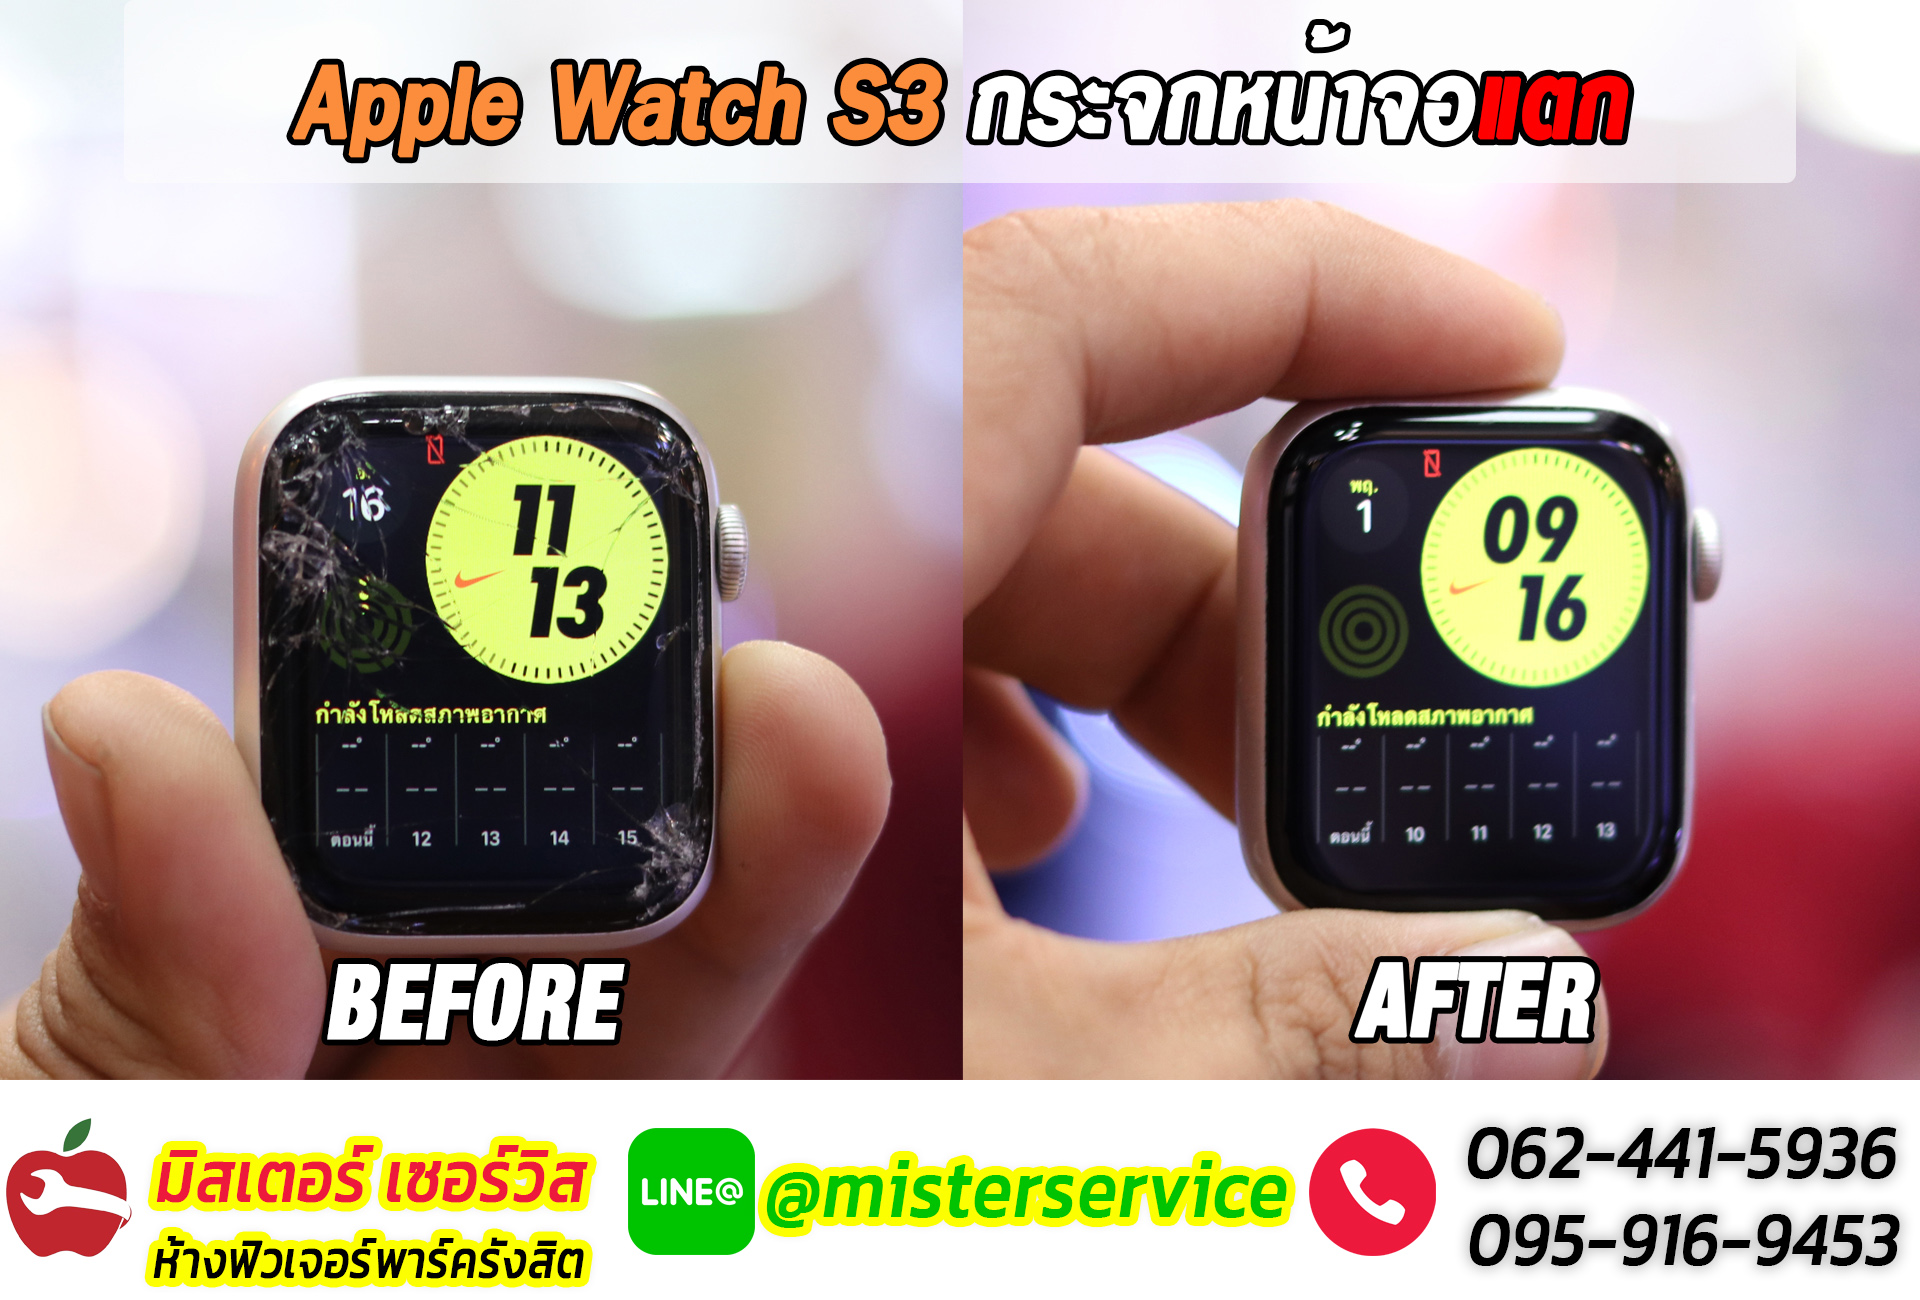 ซ่อม Apple Watch จันทรบุรี ตราด